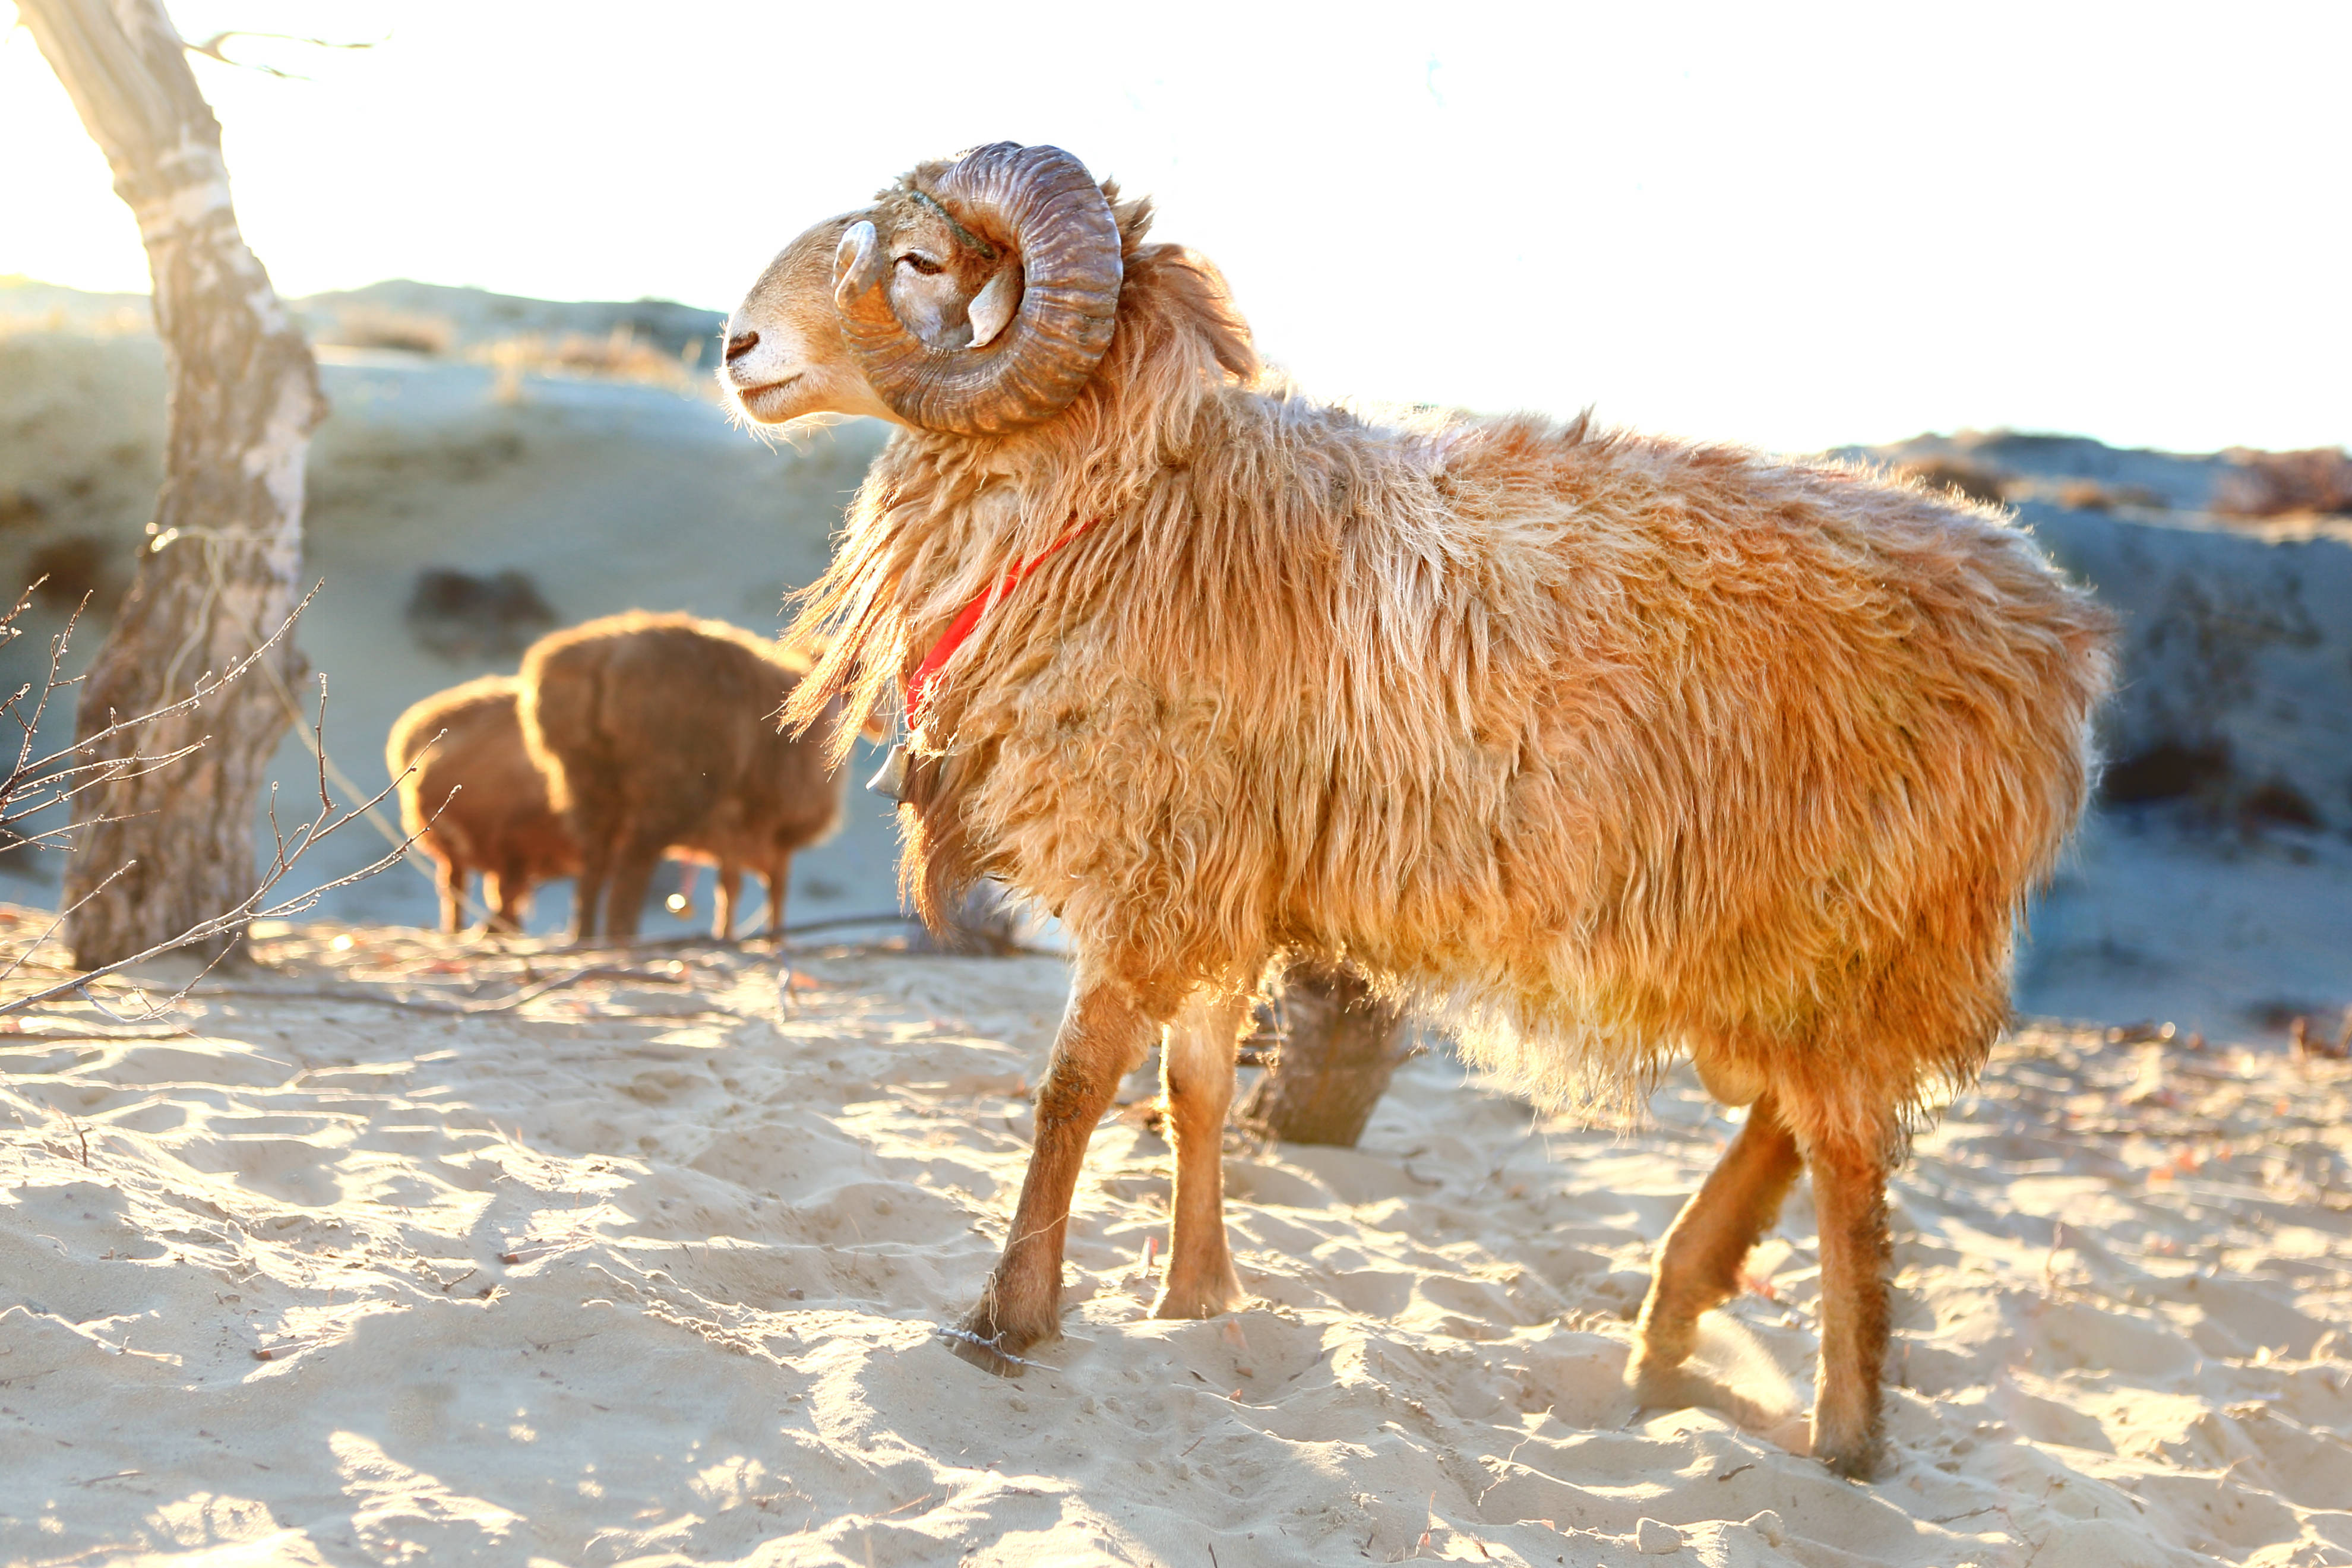 羊界的珍宝:阿勒泰大尾羊丨千里贡西域羊王